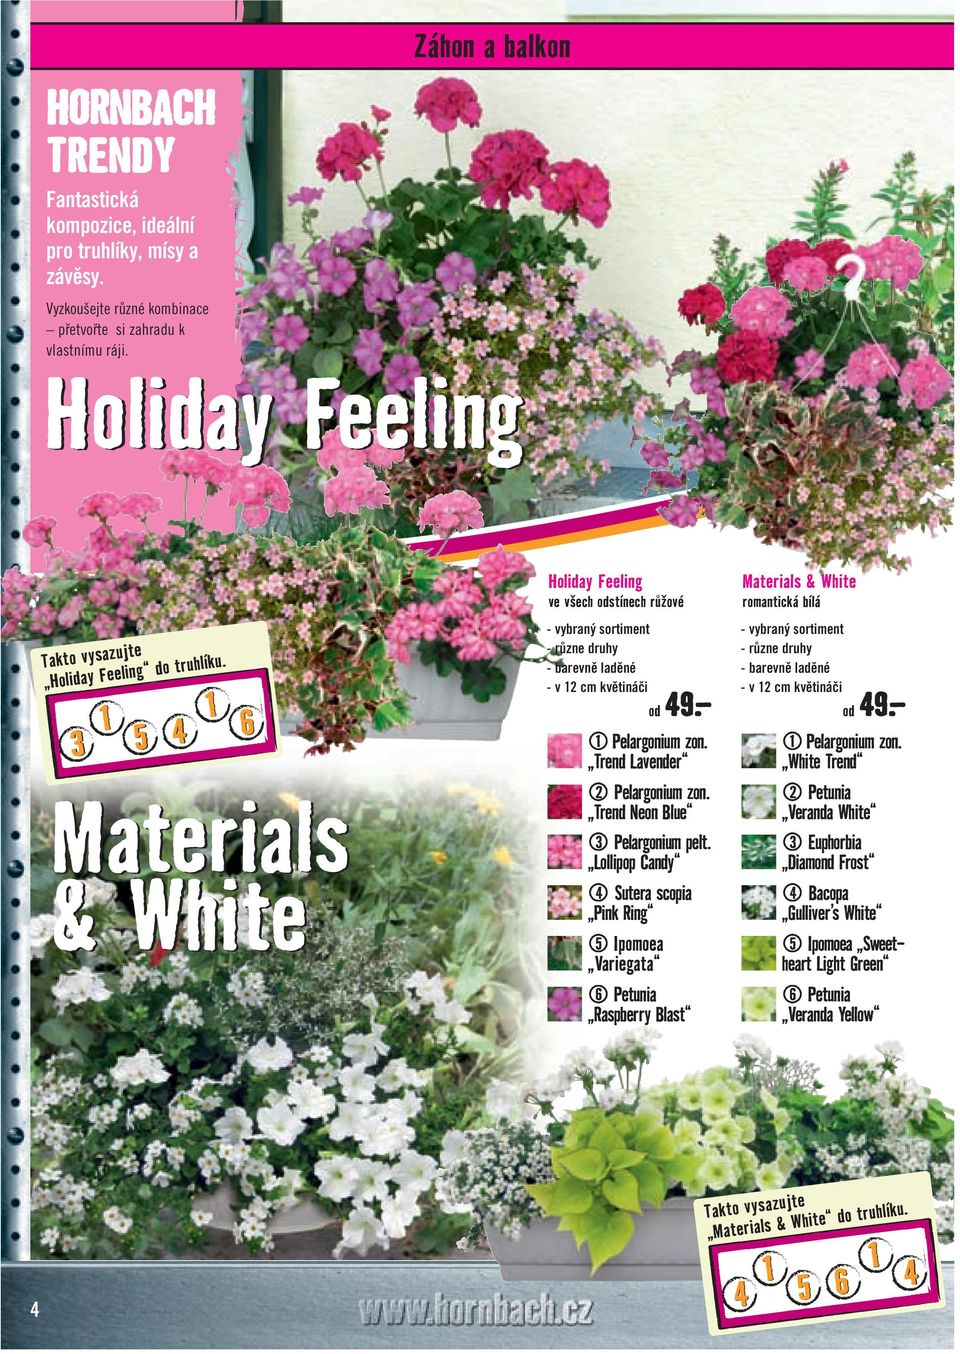 1 1 3 5 4 6 Materials & White Holiday Feeling ve všech odstínech růžové - vybraný sortiment - různe druhy - barevně laděné - v 1 cm květináči od 49. 1 Pelargonium zon. Trend Lavender Pelargonium zon.